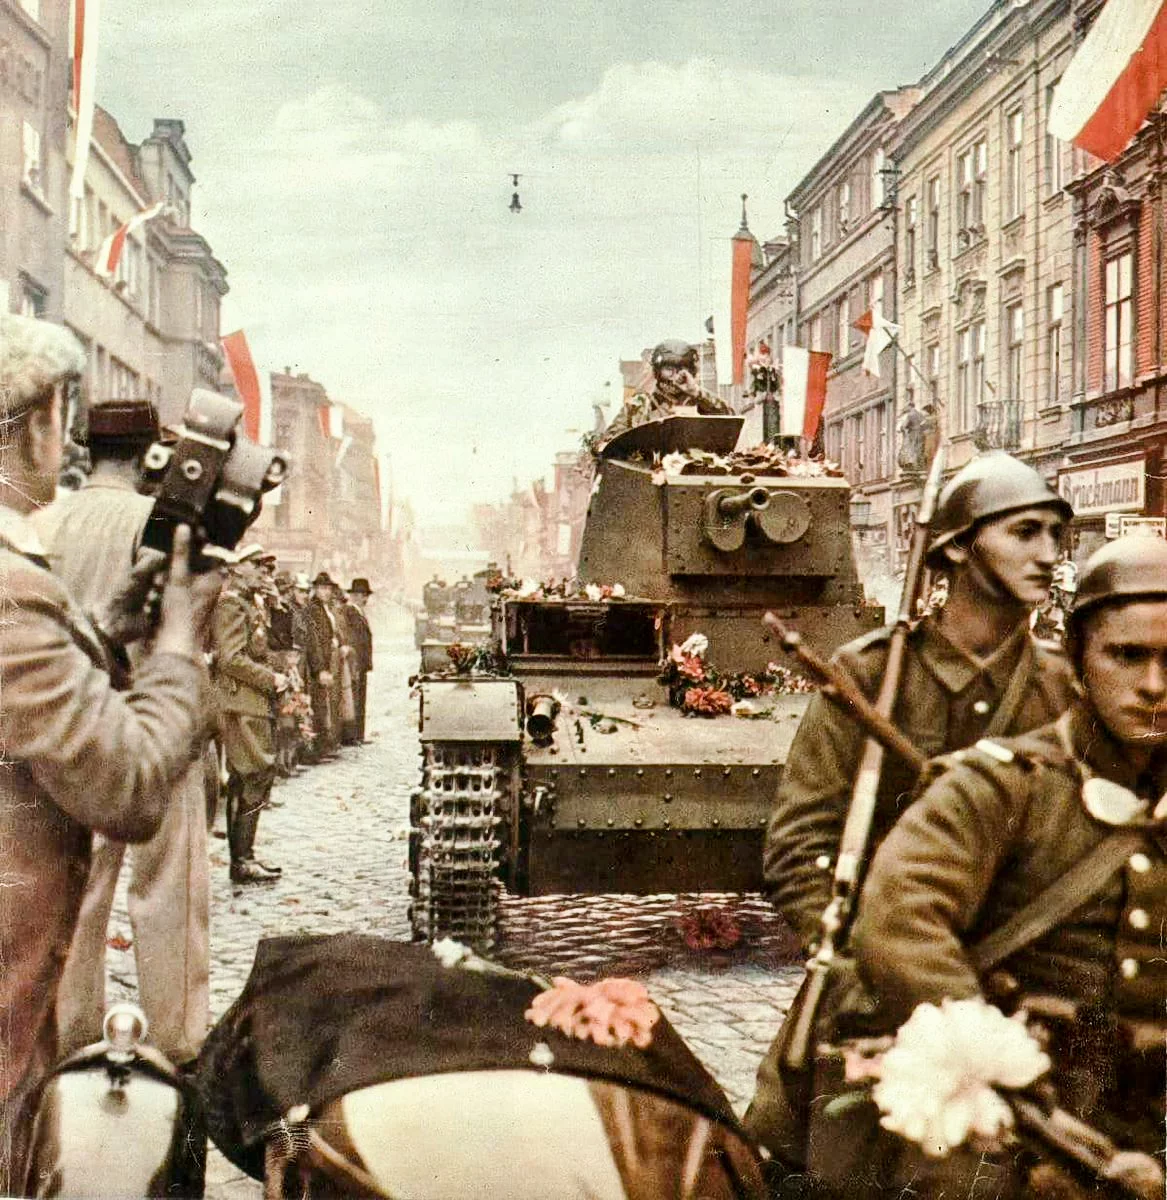 Польша начала вторую мировую. Польские войска в Чехословакии 1938. Оккупация Польши 1939. Польская армия 1939 во второй мировой войне. Польша и Германия в оккупированной Чехословакии 1938.